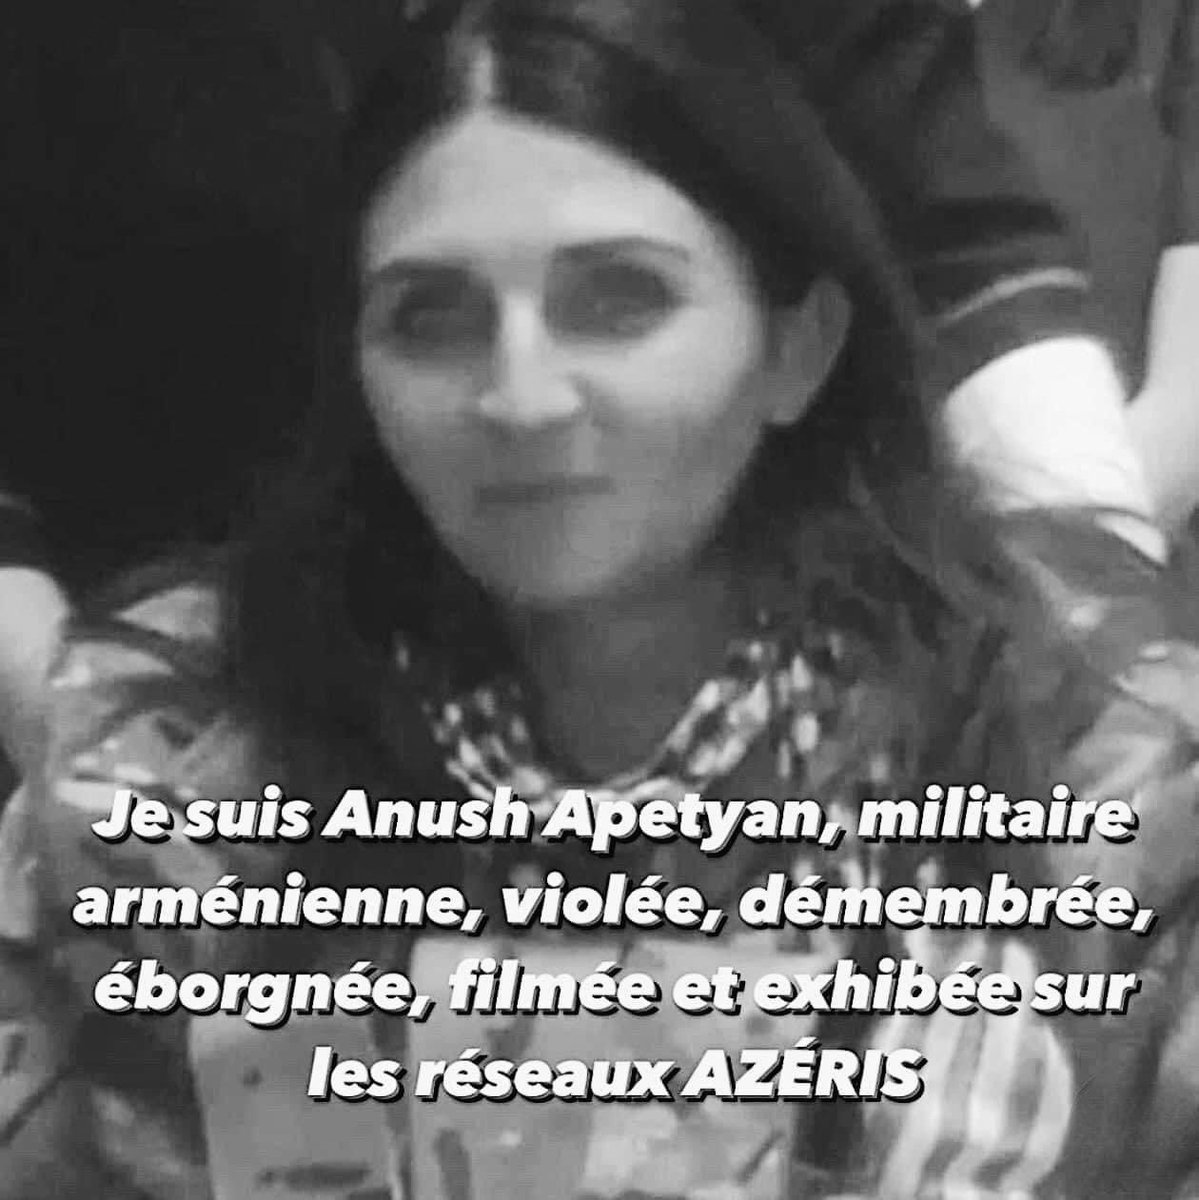 #AnushApetyan  ton visage et ton histoire doit faire le tour du monde et le #monde doit savoir!
L' #Azerbaïdjan est un Etat #criminel!
Elle a été tuée car elle était '#arménienne'!
Refuser les sanctions contre l'🇦🇿, c’est cautionner l’épuration ethnique des #Arméniens.
#Europe